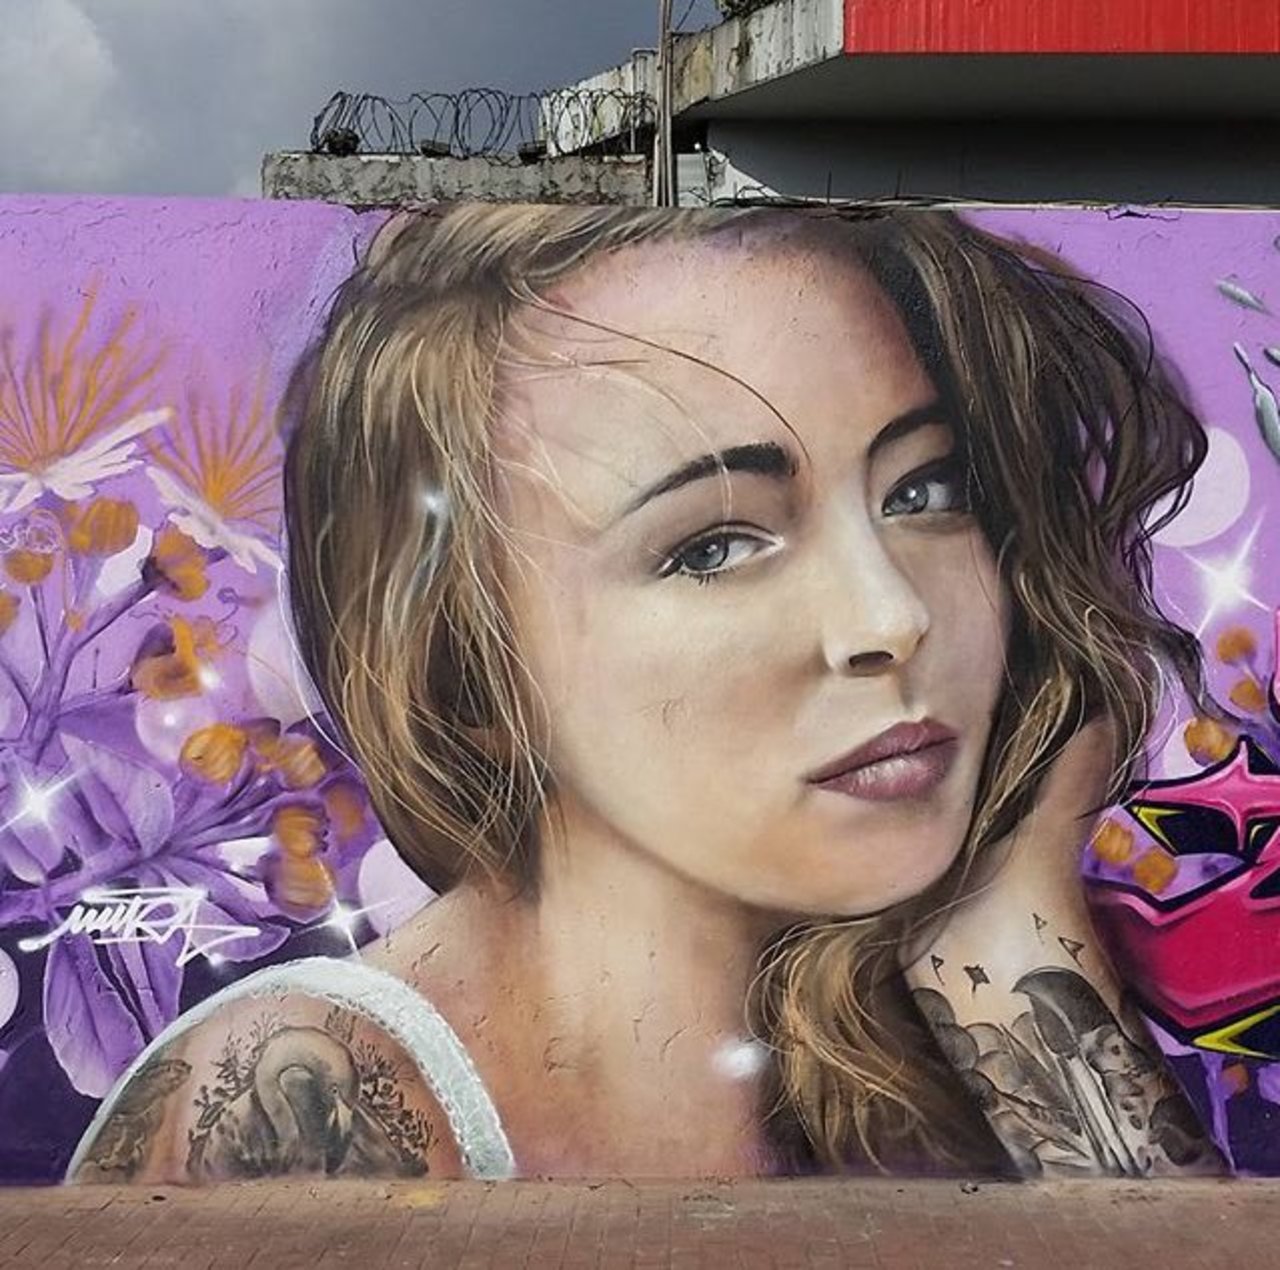 RT belilac "New Street Art by Mantarea 

#art #graffiti #mural #streetart https://t.co/U038PzVuGN"